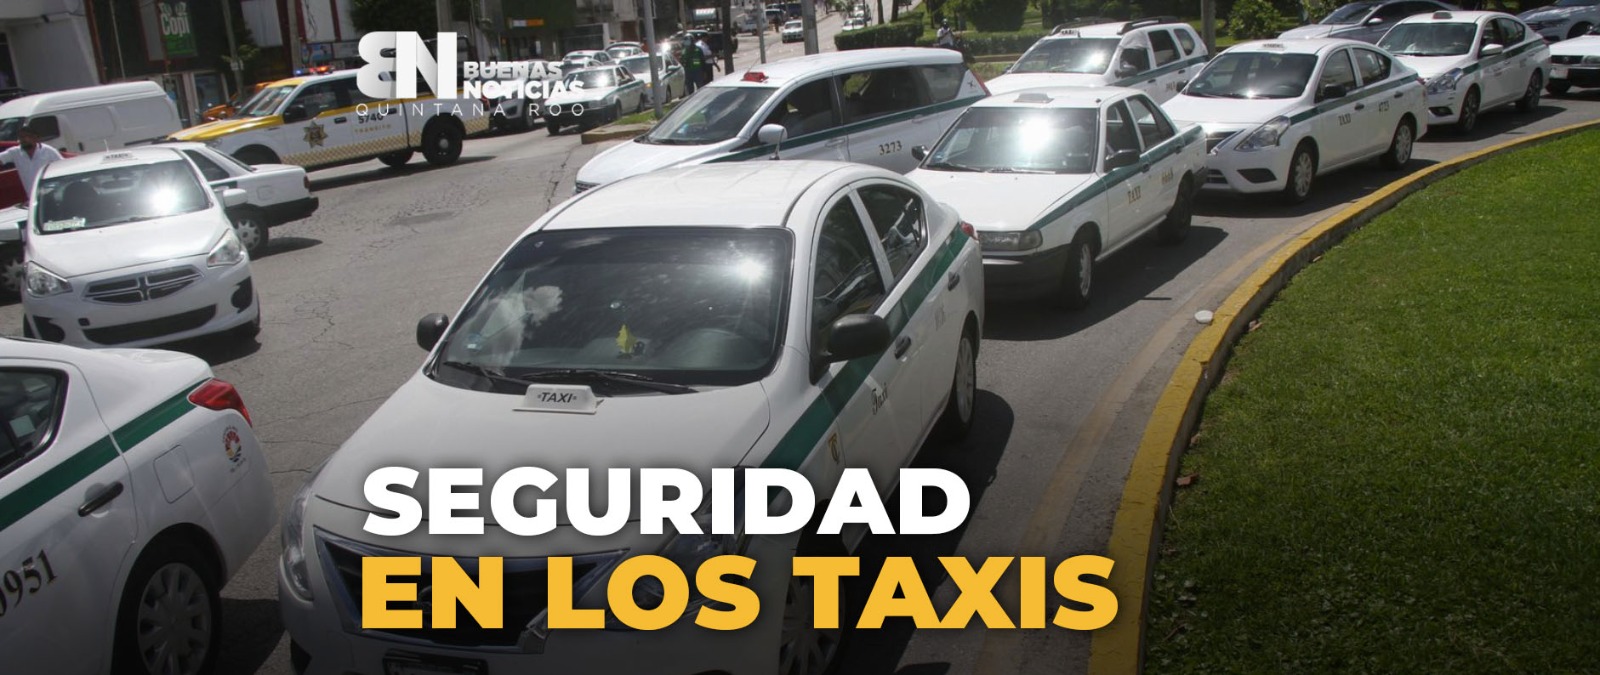 Proponen más seguridad en taxis en Quintana Roo (VIDEO)